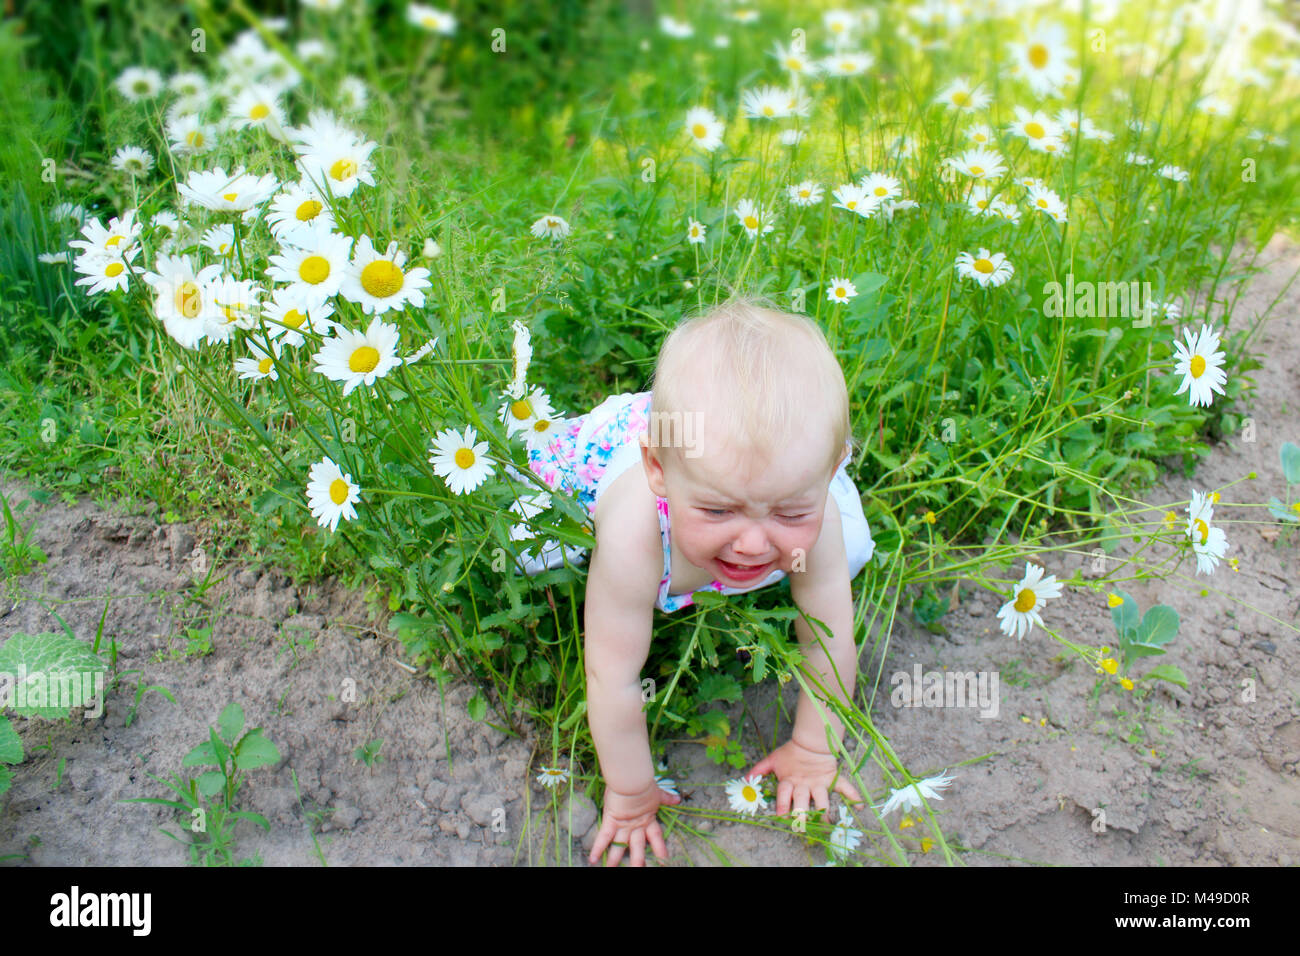 Baby fällt in Blüte - Bett von weissen schönen Gänseblümchen  Stockfotografie - Alamy